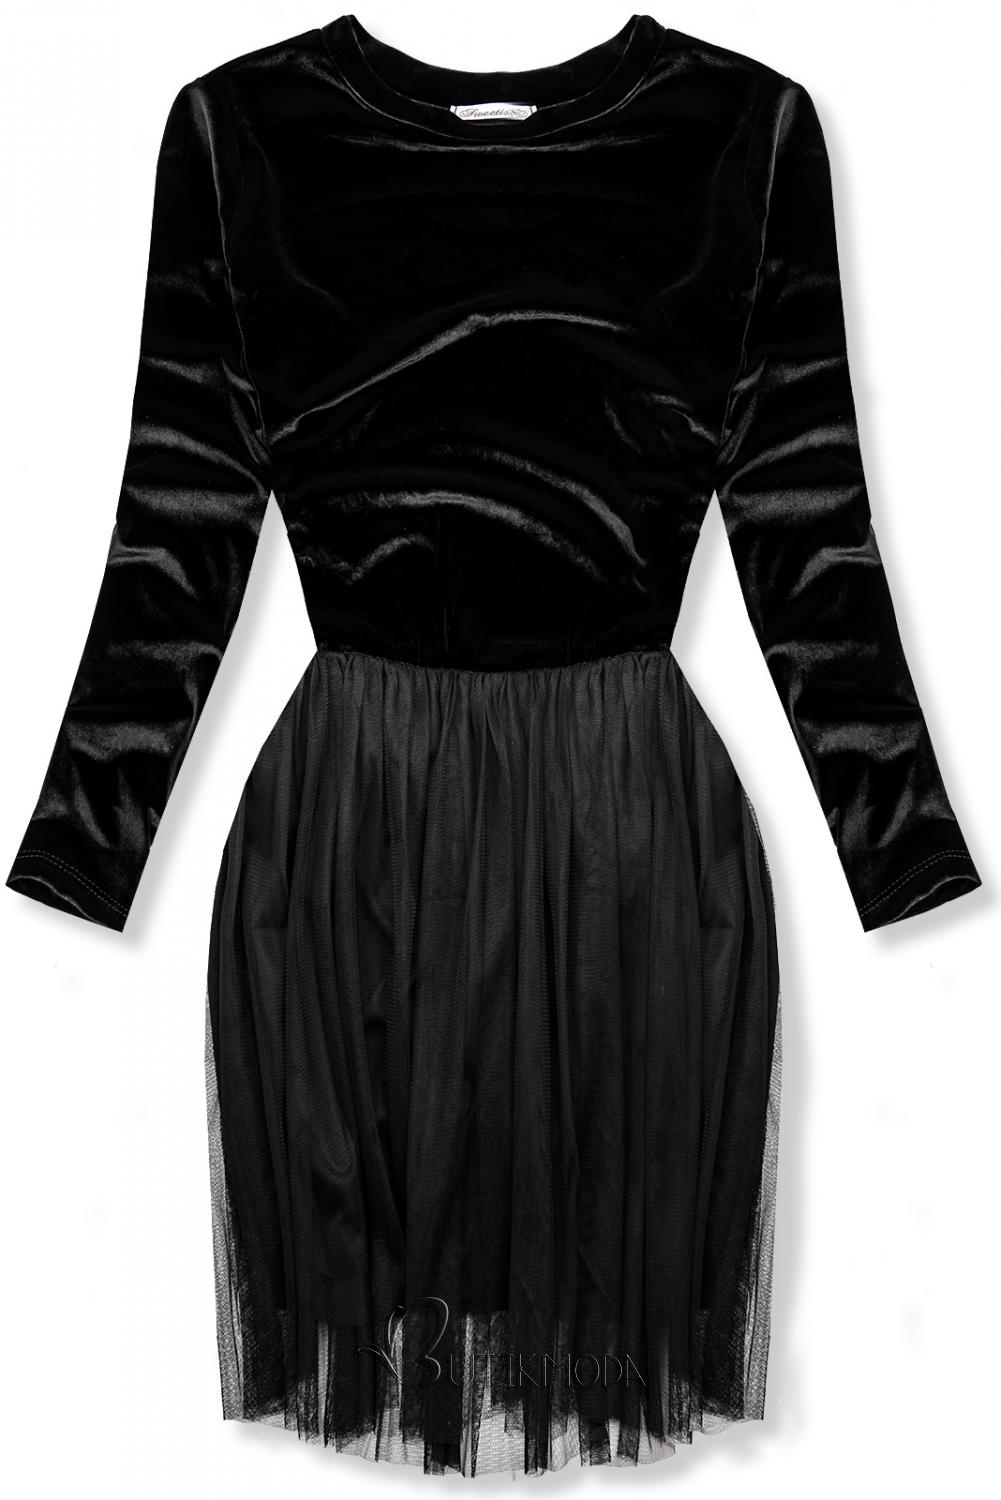 Fekete színű ruha tüll szoknyával